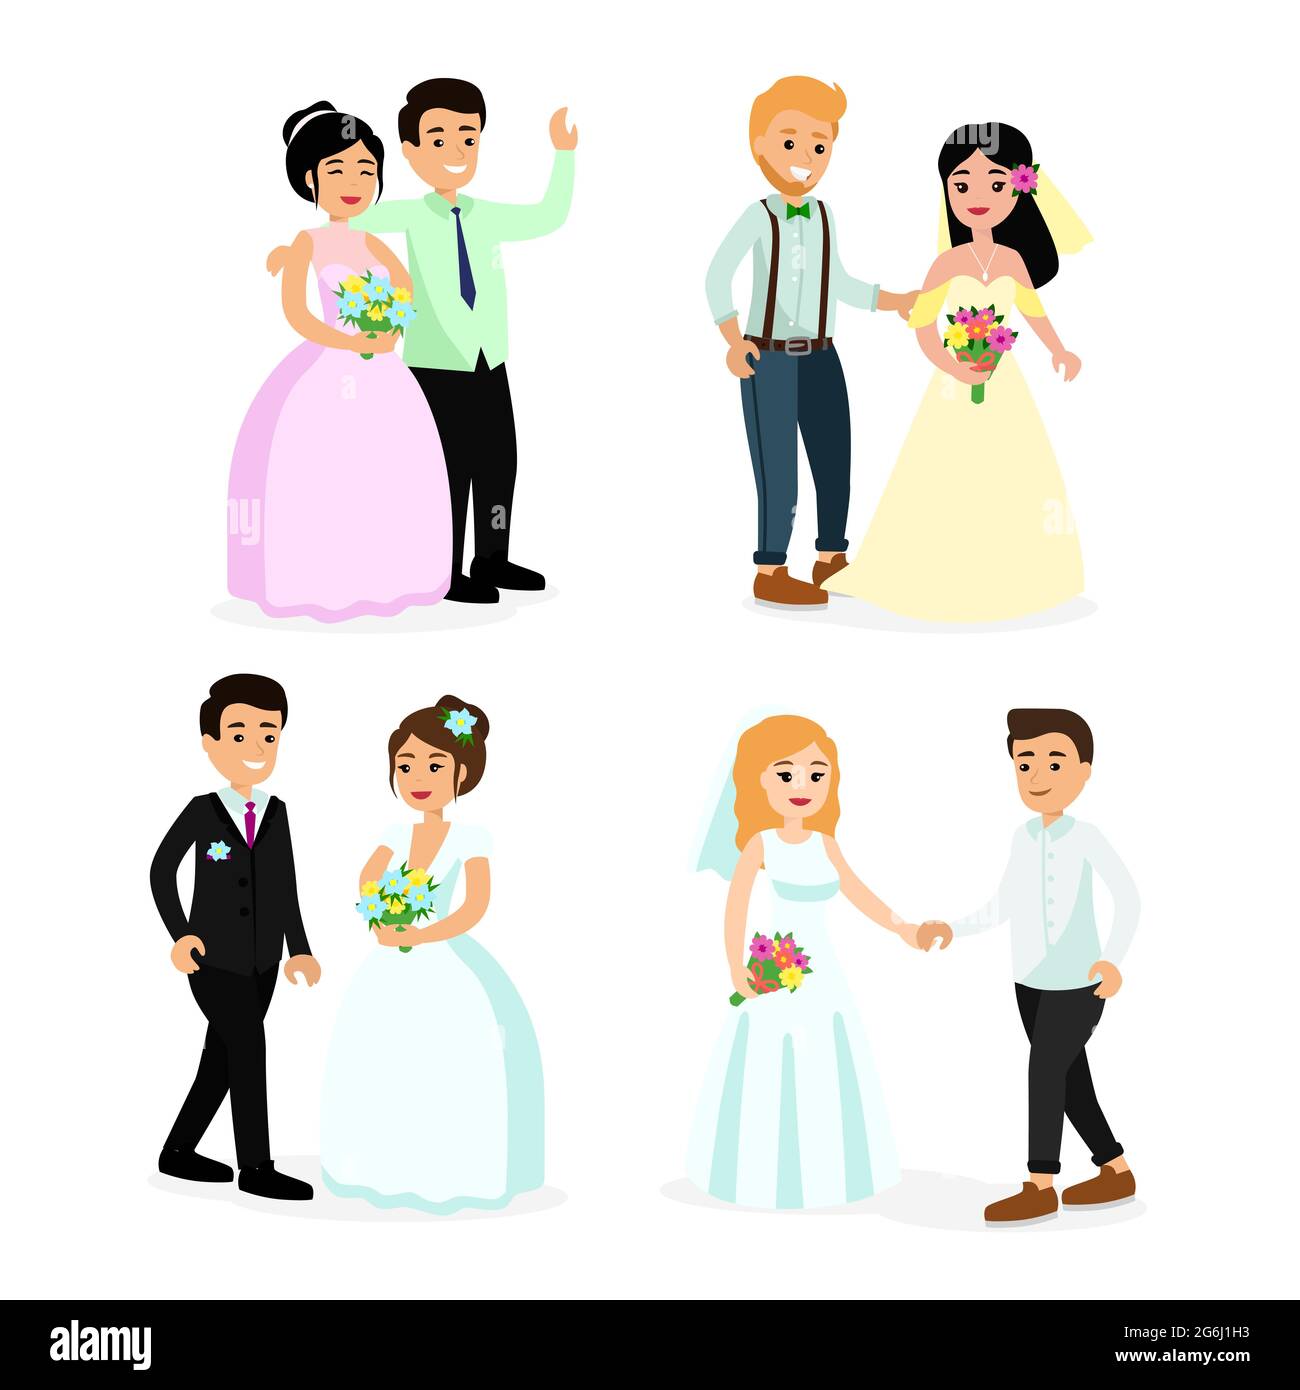 Vektor-Illustration Set von glücklich niedlichen Brautpaar Braut und Bräutigam isoliert auf weißem Hintergrund in Cartoon-flachen Stil. Stock Vektor